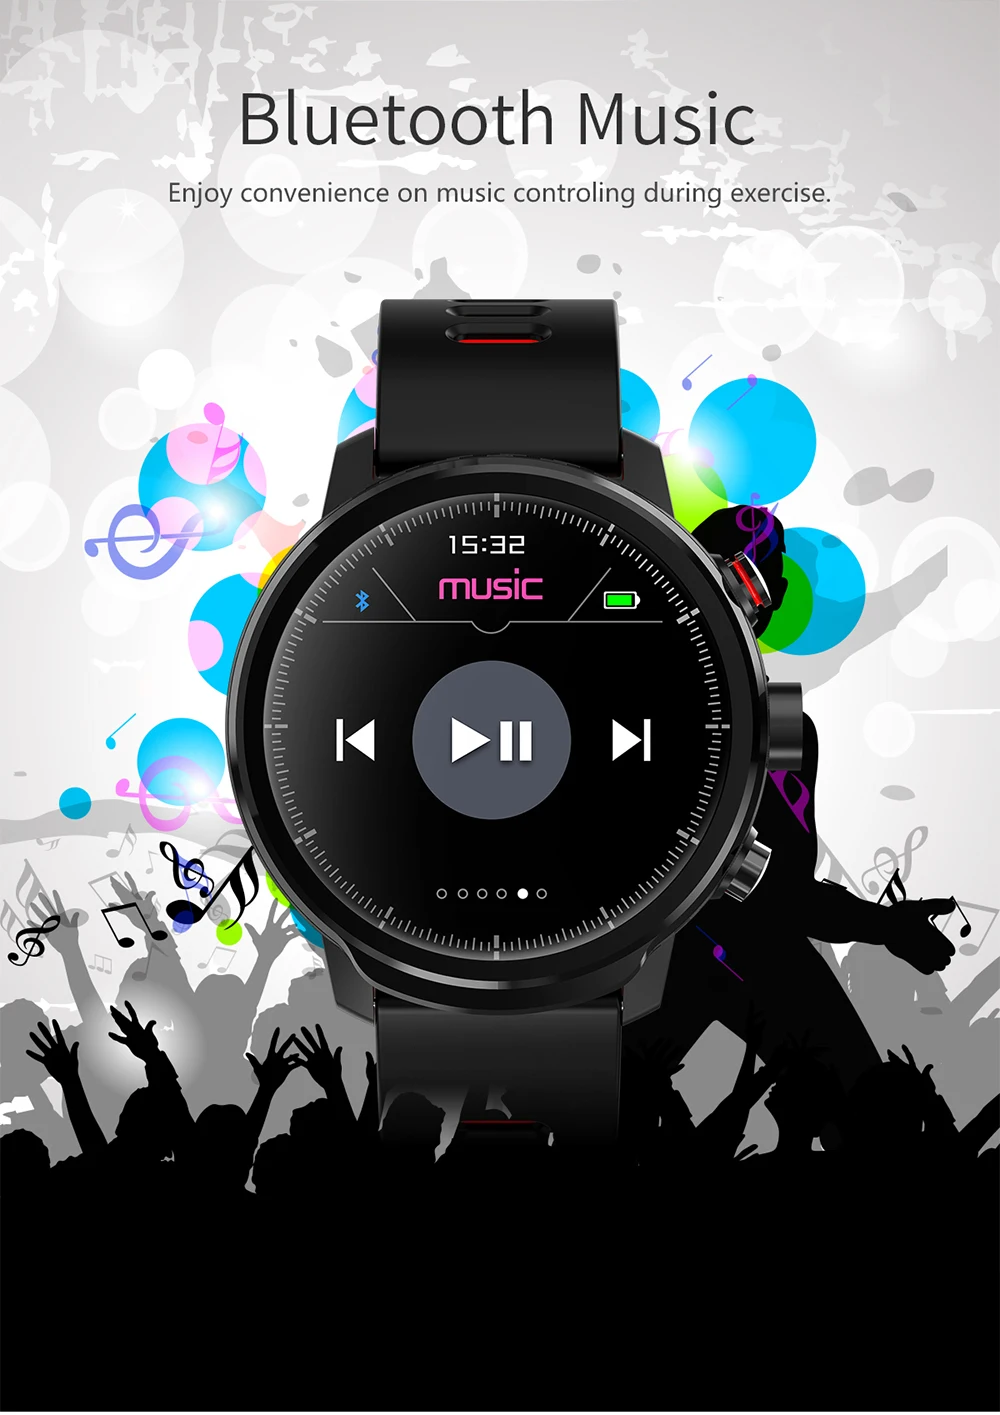 ZOOGOU L5 Смарт-часы Для мужчин IP68 Водонепроницаемый несколько спортивный режим сердечного ритма прогноз погоды Bluetooth Smartwatch в режиме ожидания 100 дней